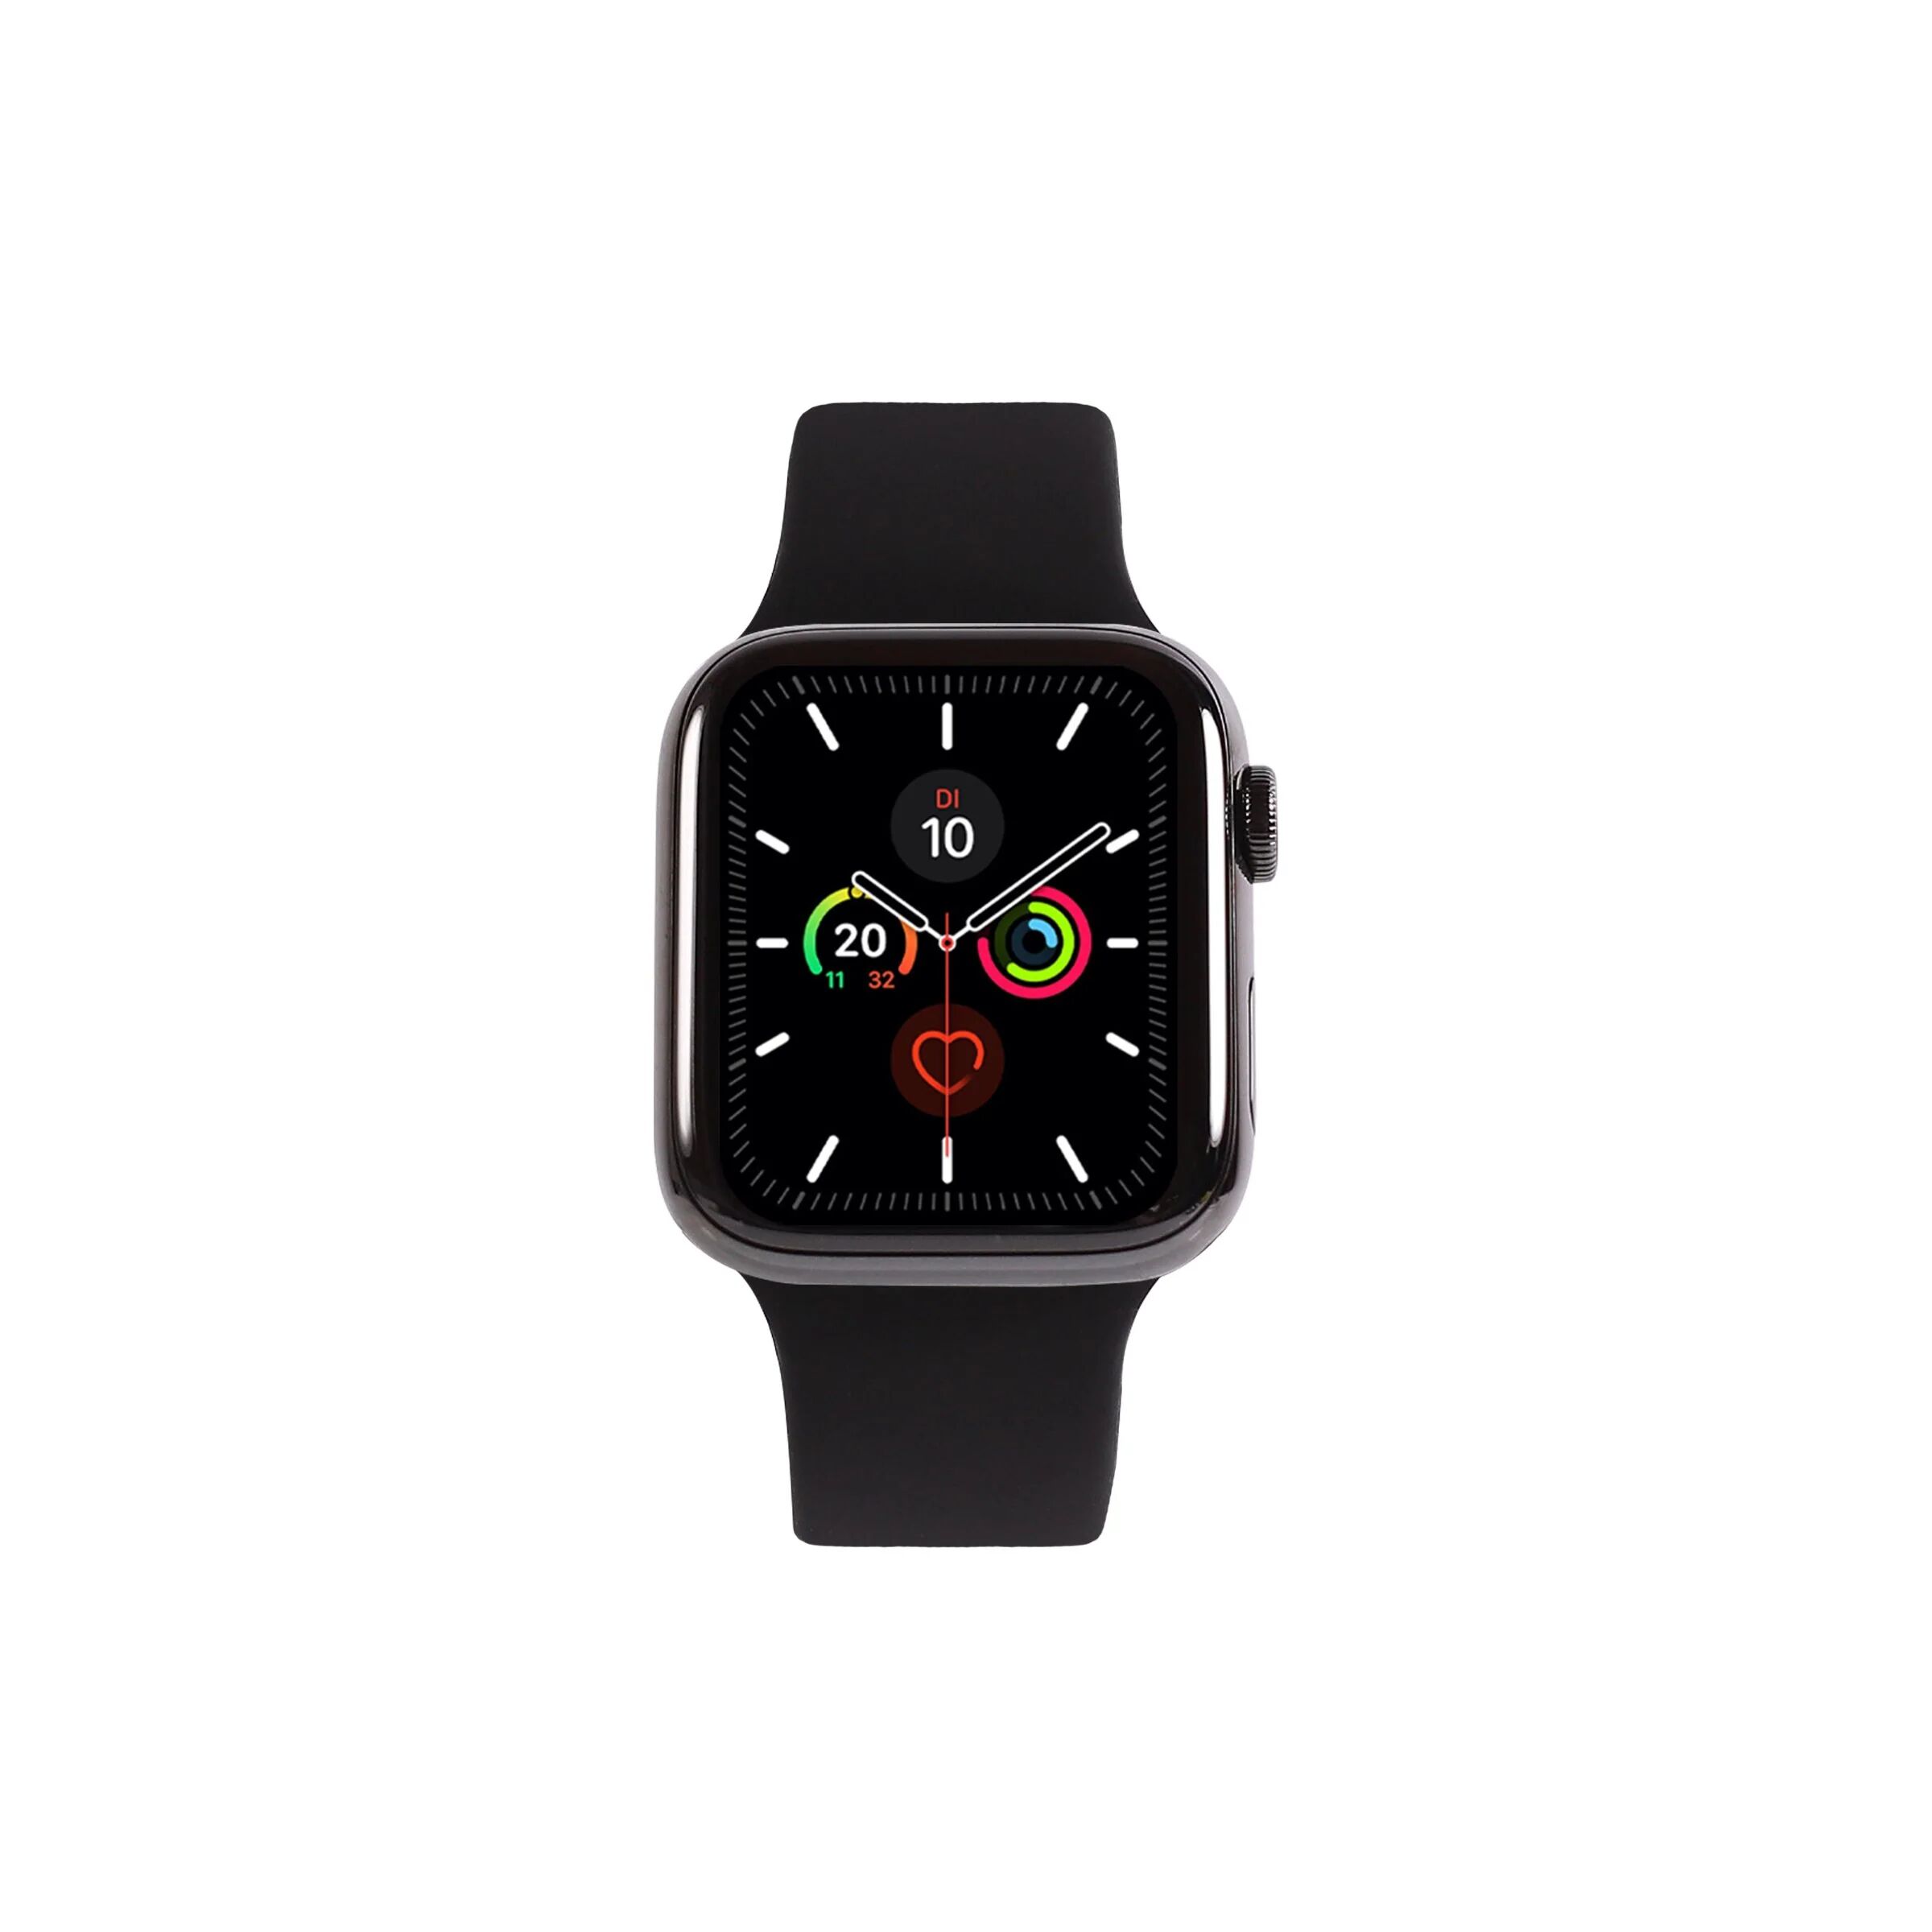 Apple Watch Series 5 Edelstahl 44 mm Gebraucht / GPS + LTE / Space Schwarz